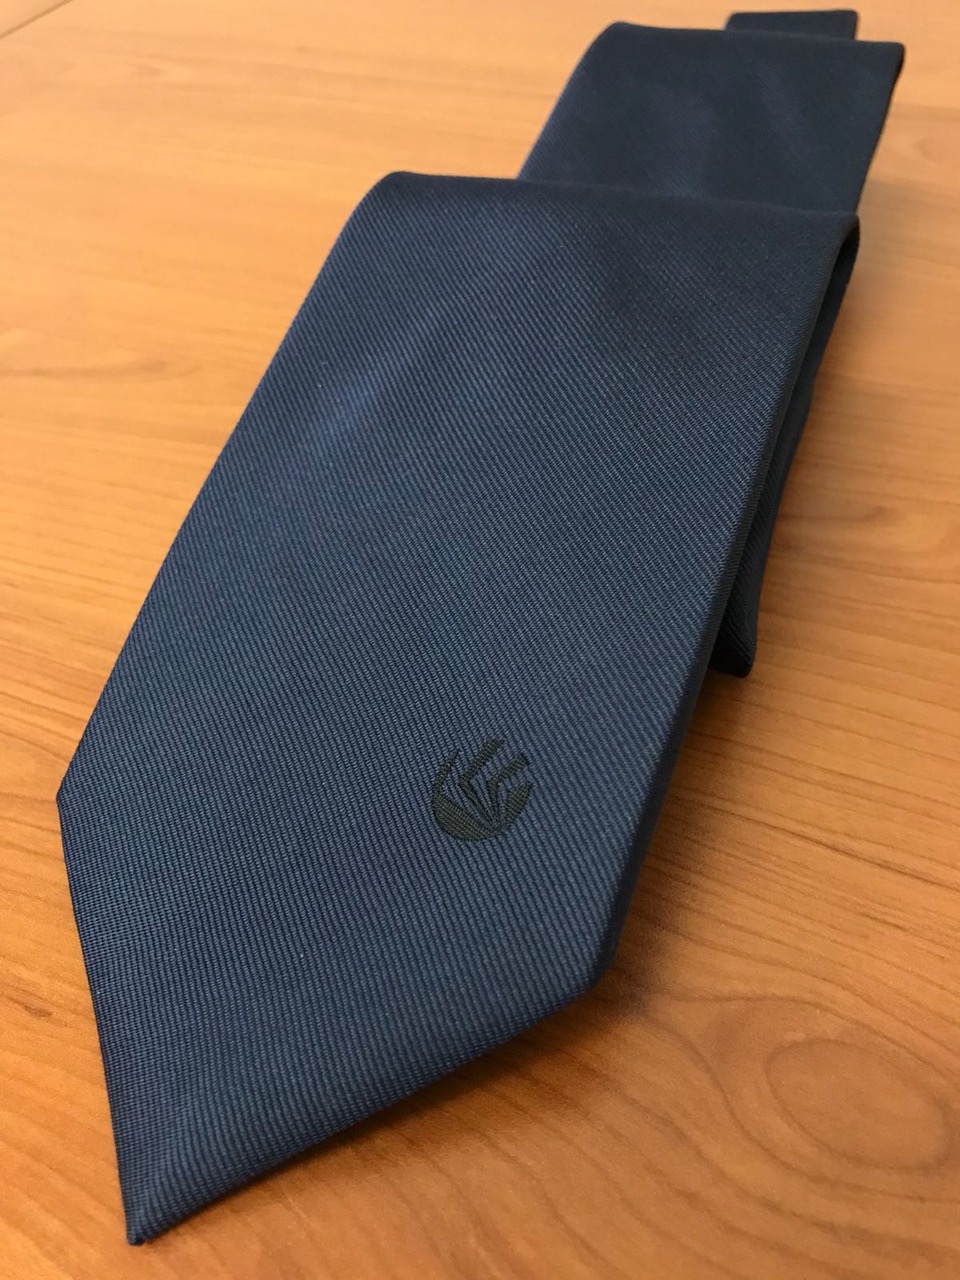 cravatta personalizzata